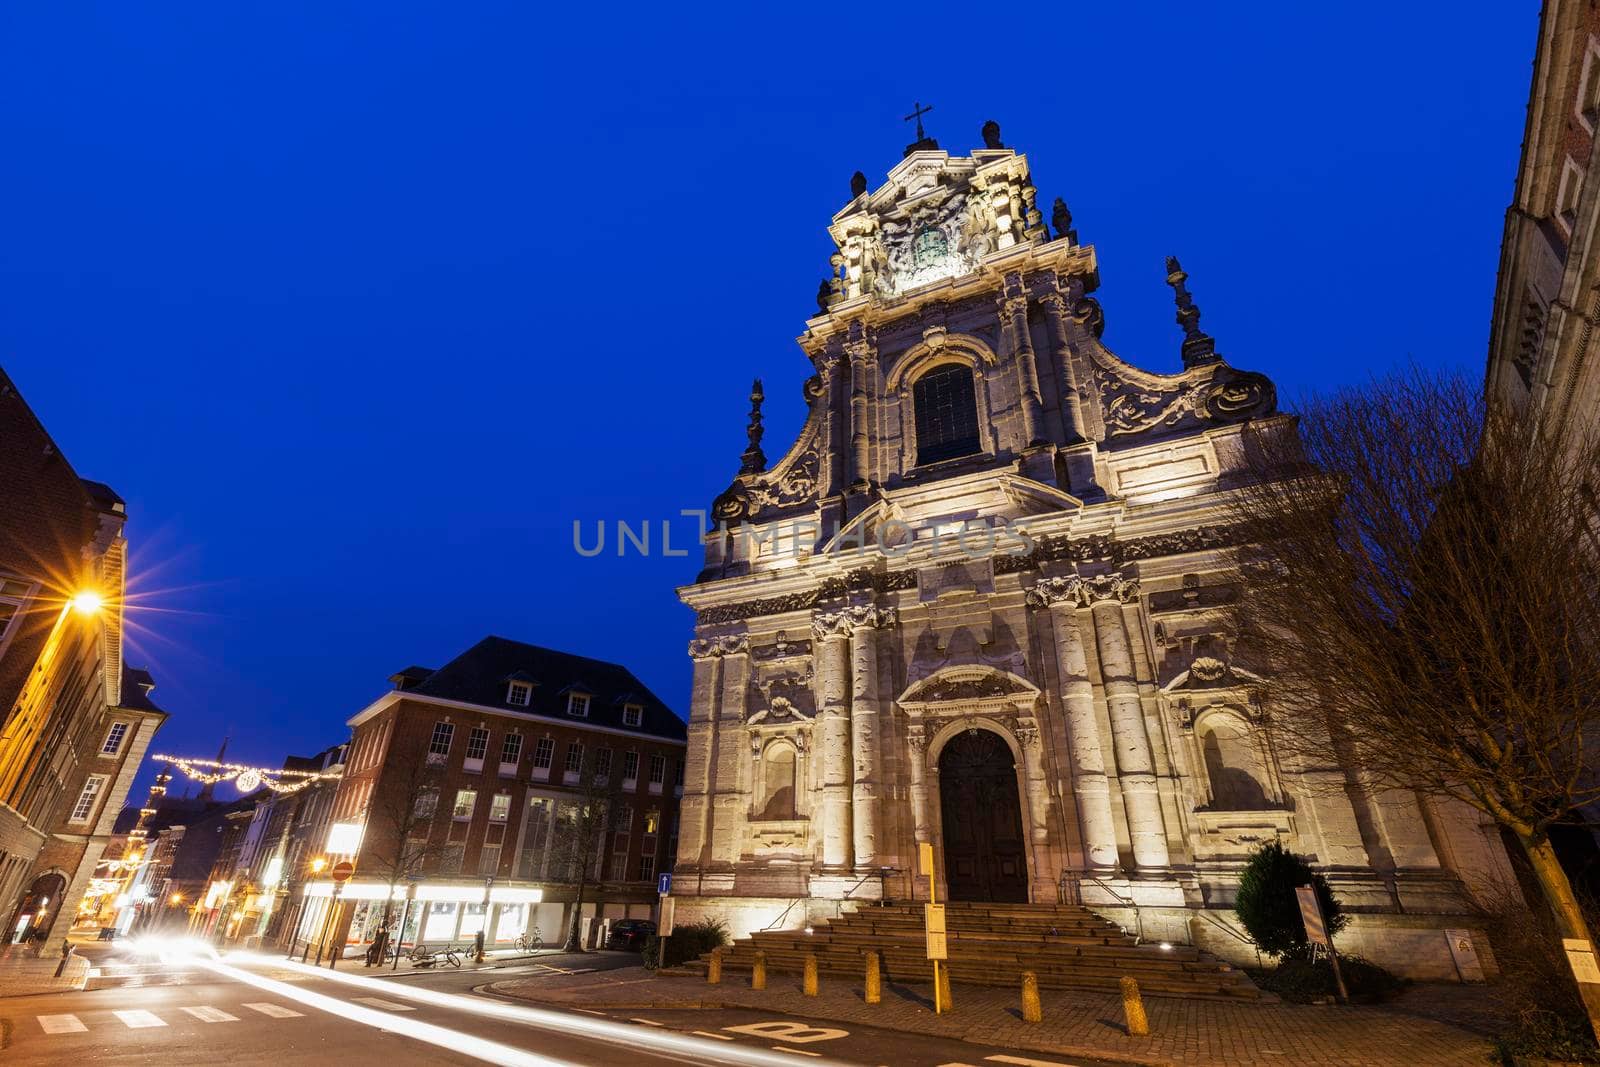 Saint Michael's Church in Leuven. Leuven, Flemish Region, Belgium